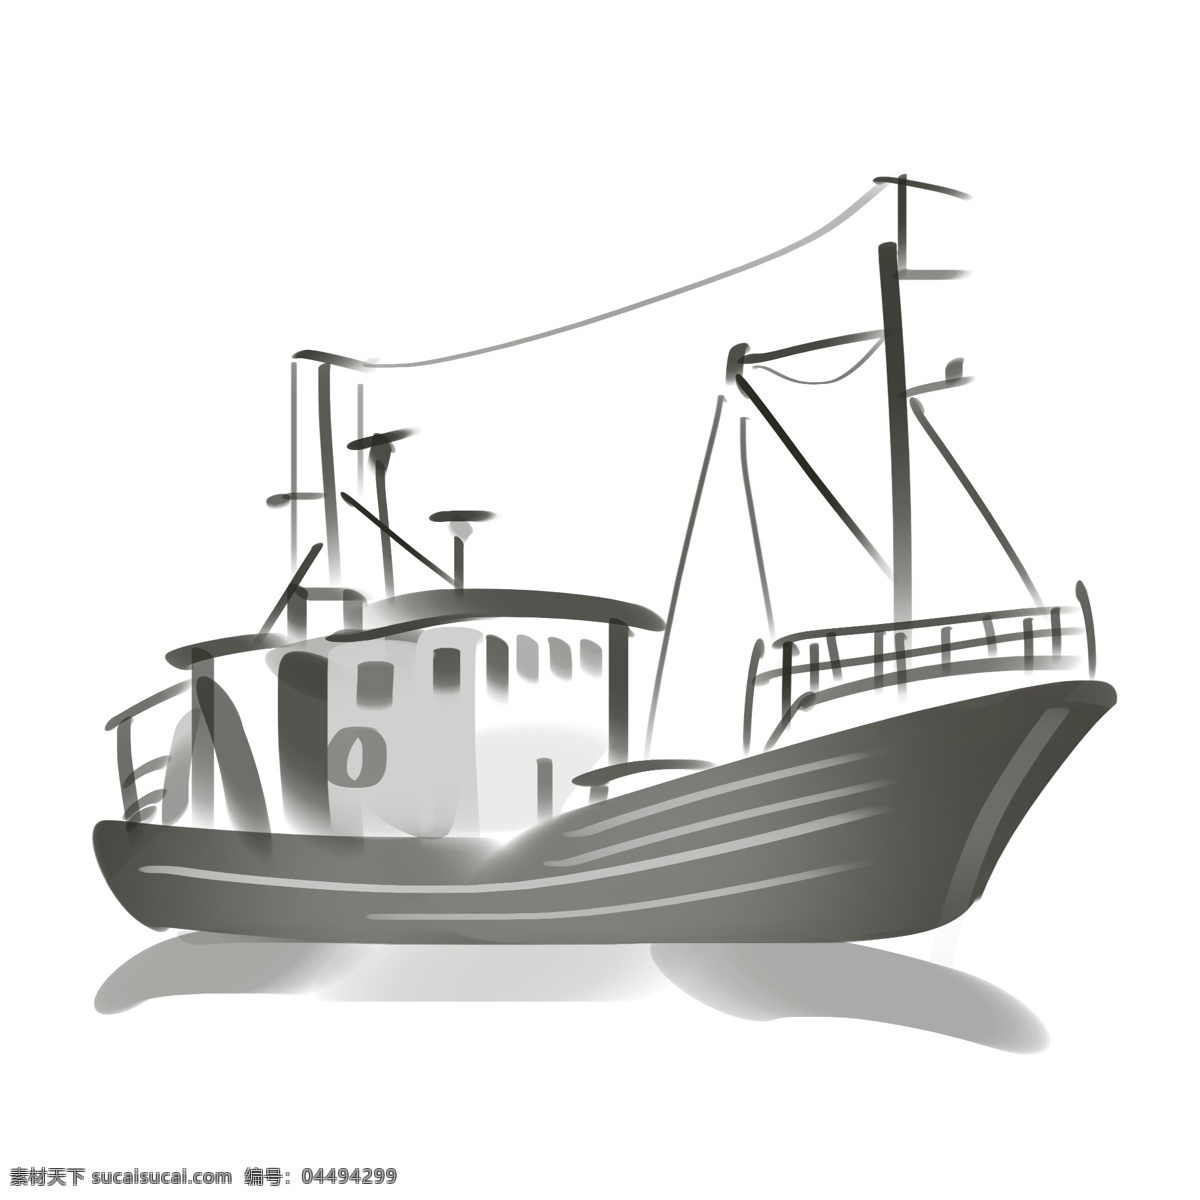 古风 水墨 帆船 插画 中国风帆船 水墨船 水面 航行的船只 中国风 墨迹 水墨插画 手绘 船只 大型渔船